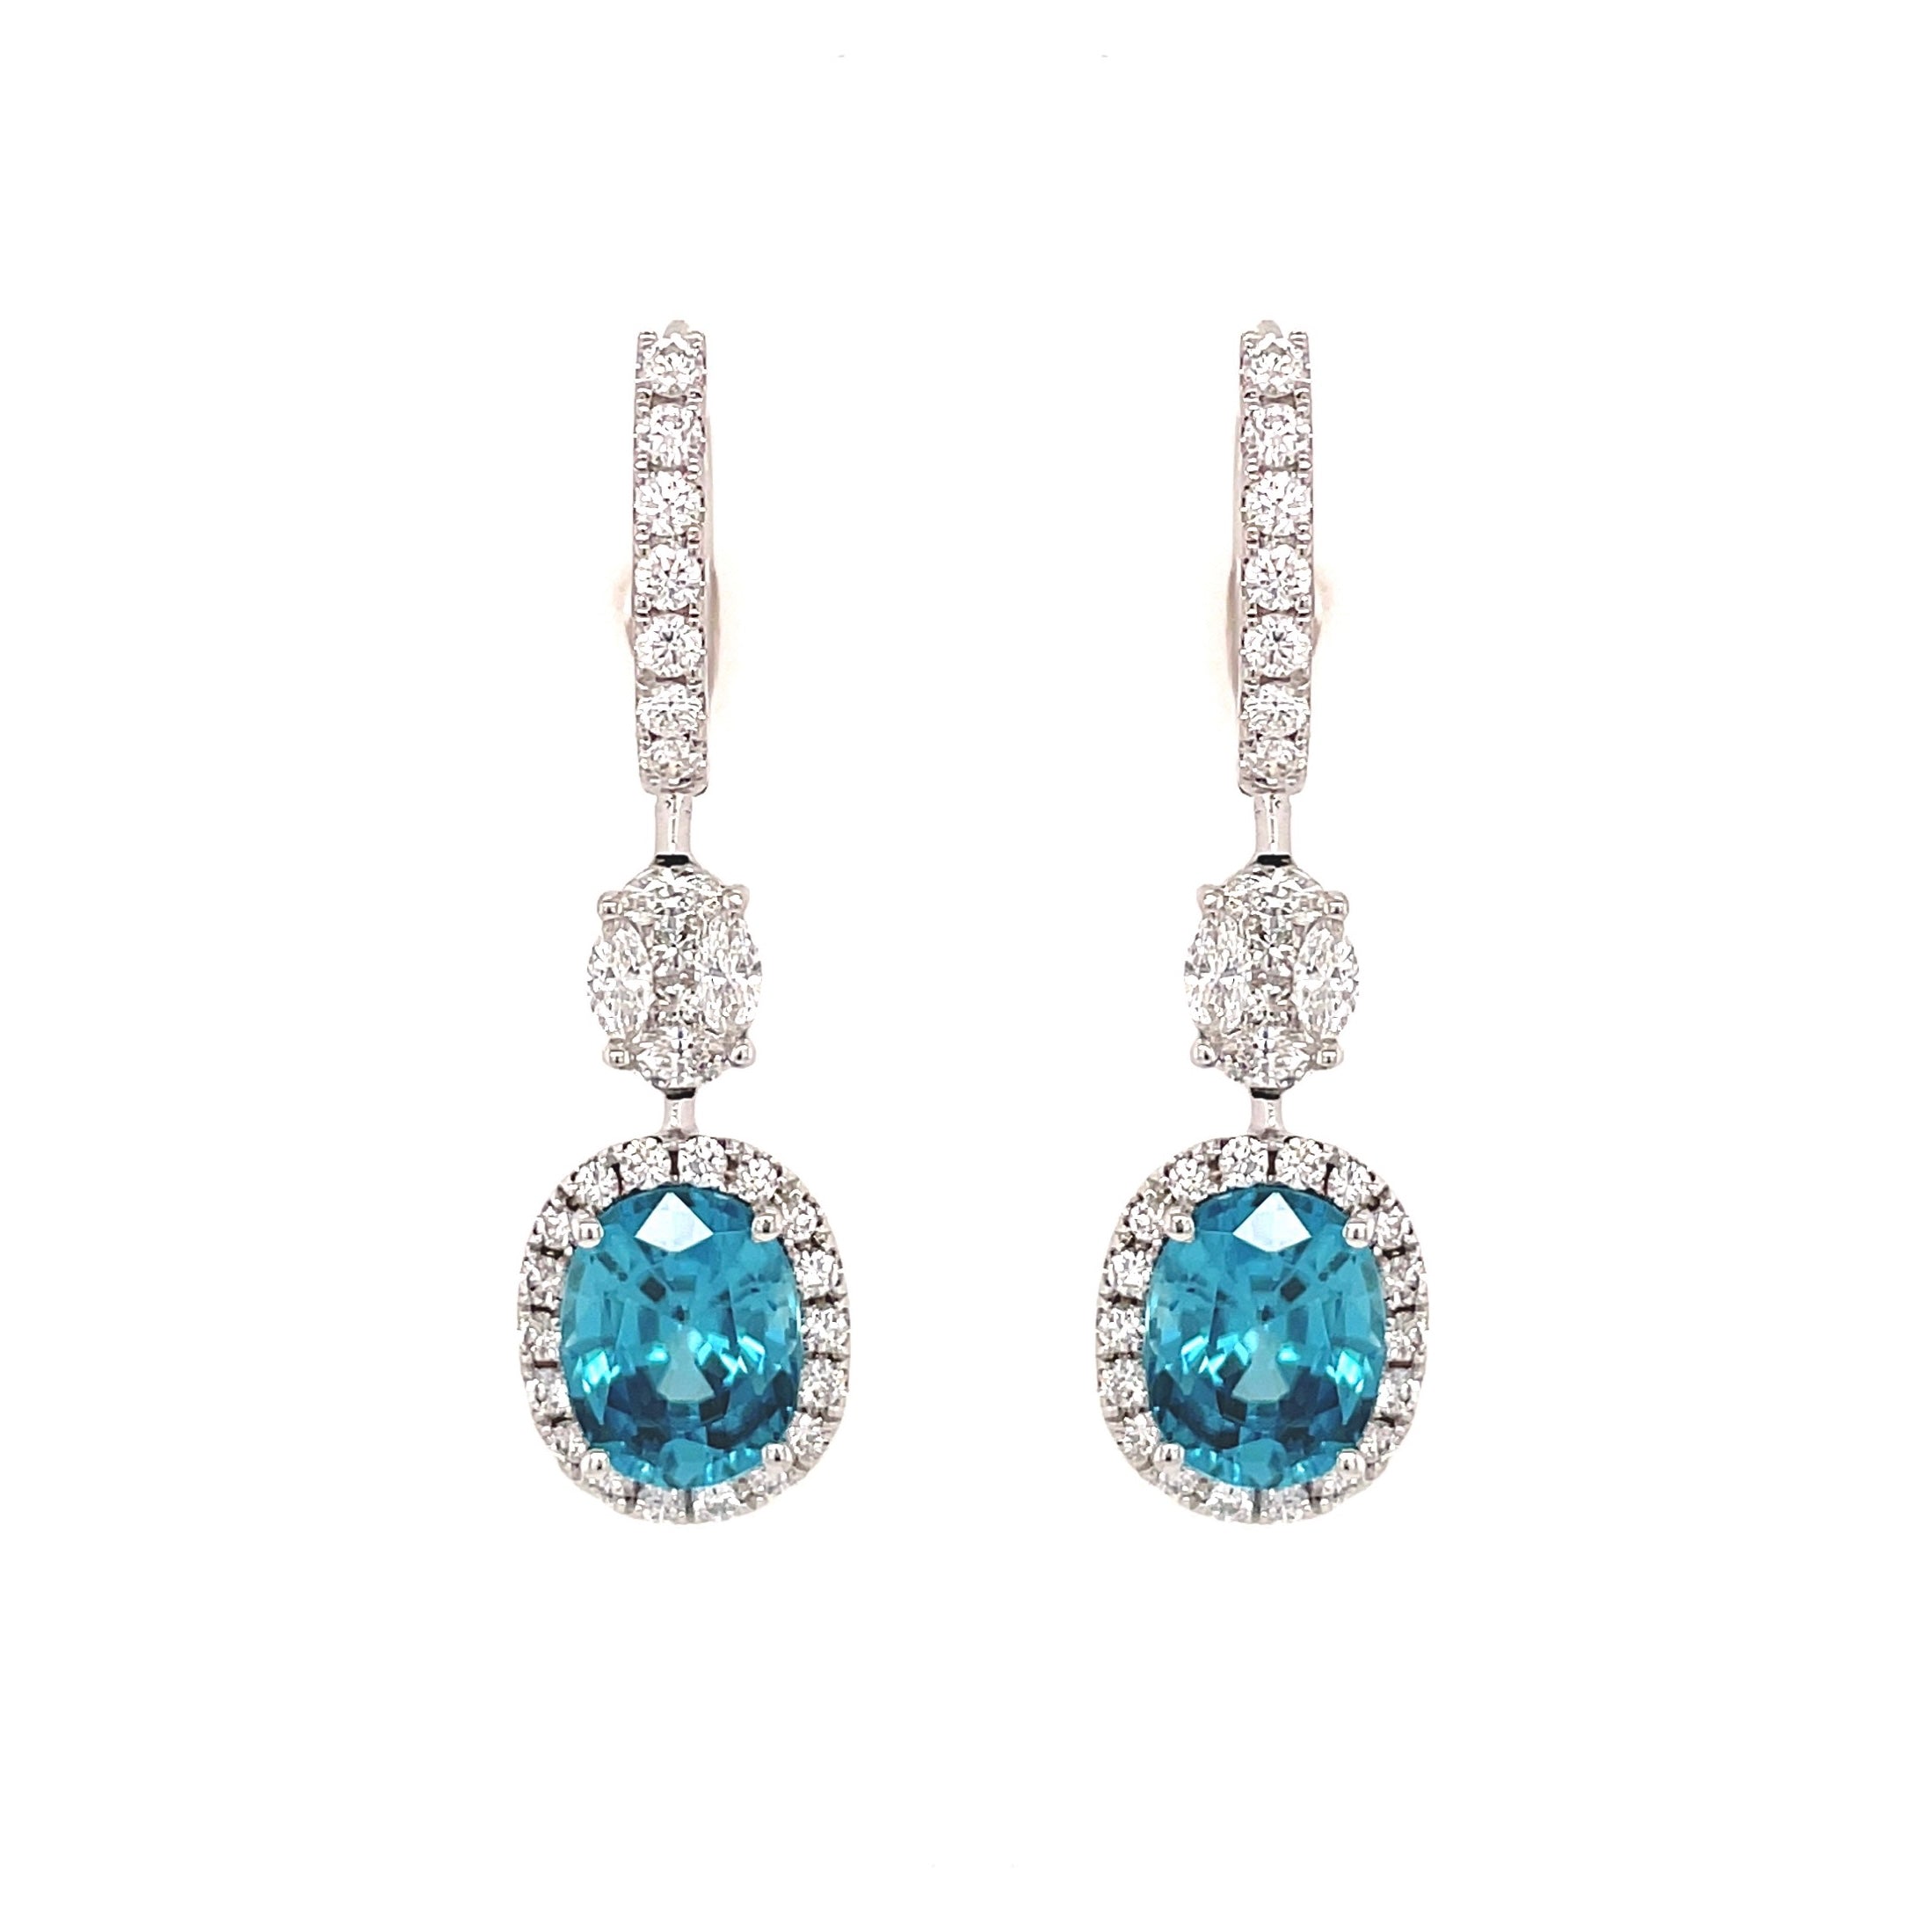 Youbella Navy Blue Teardrop-shaped Stone-studded Drop Earrings |  Ybear32709myn